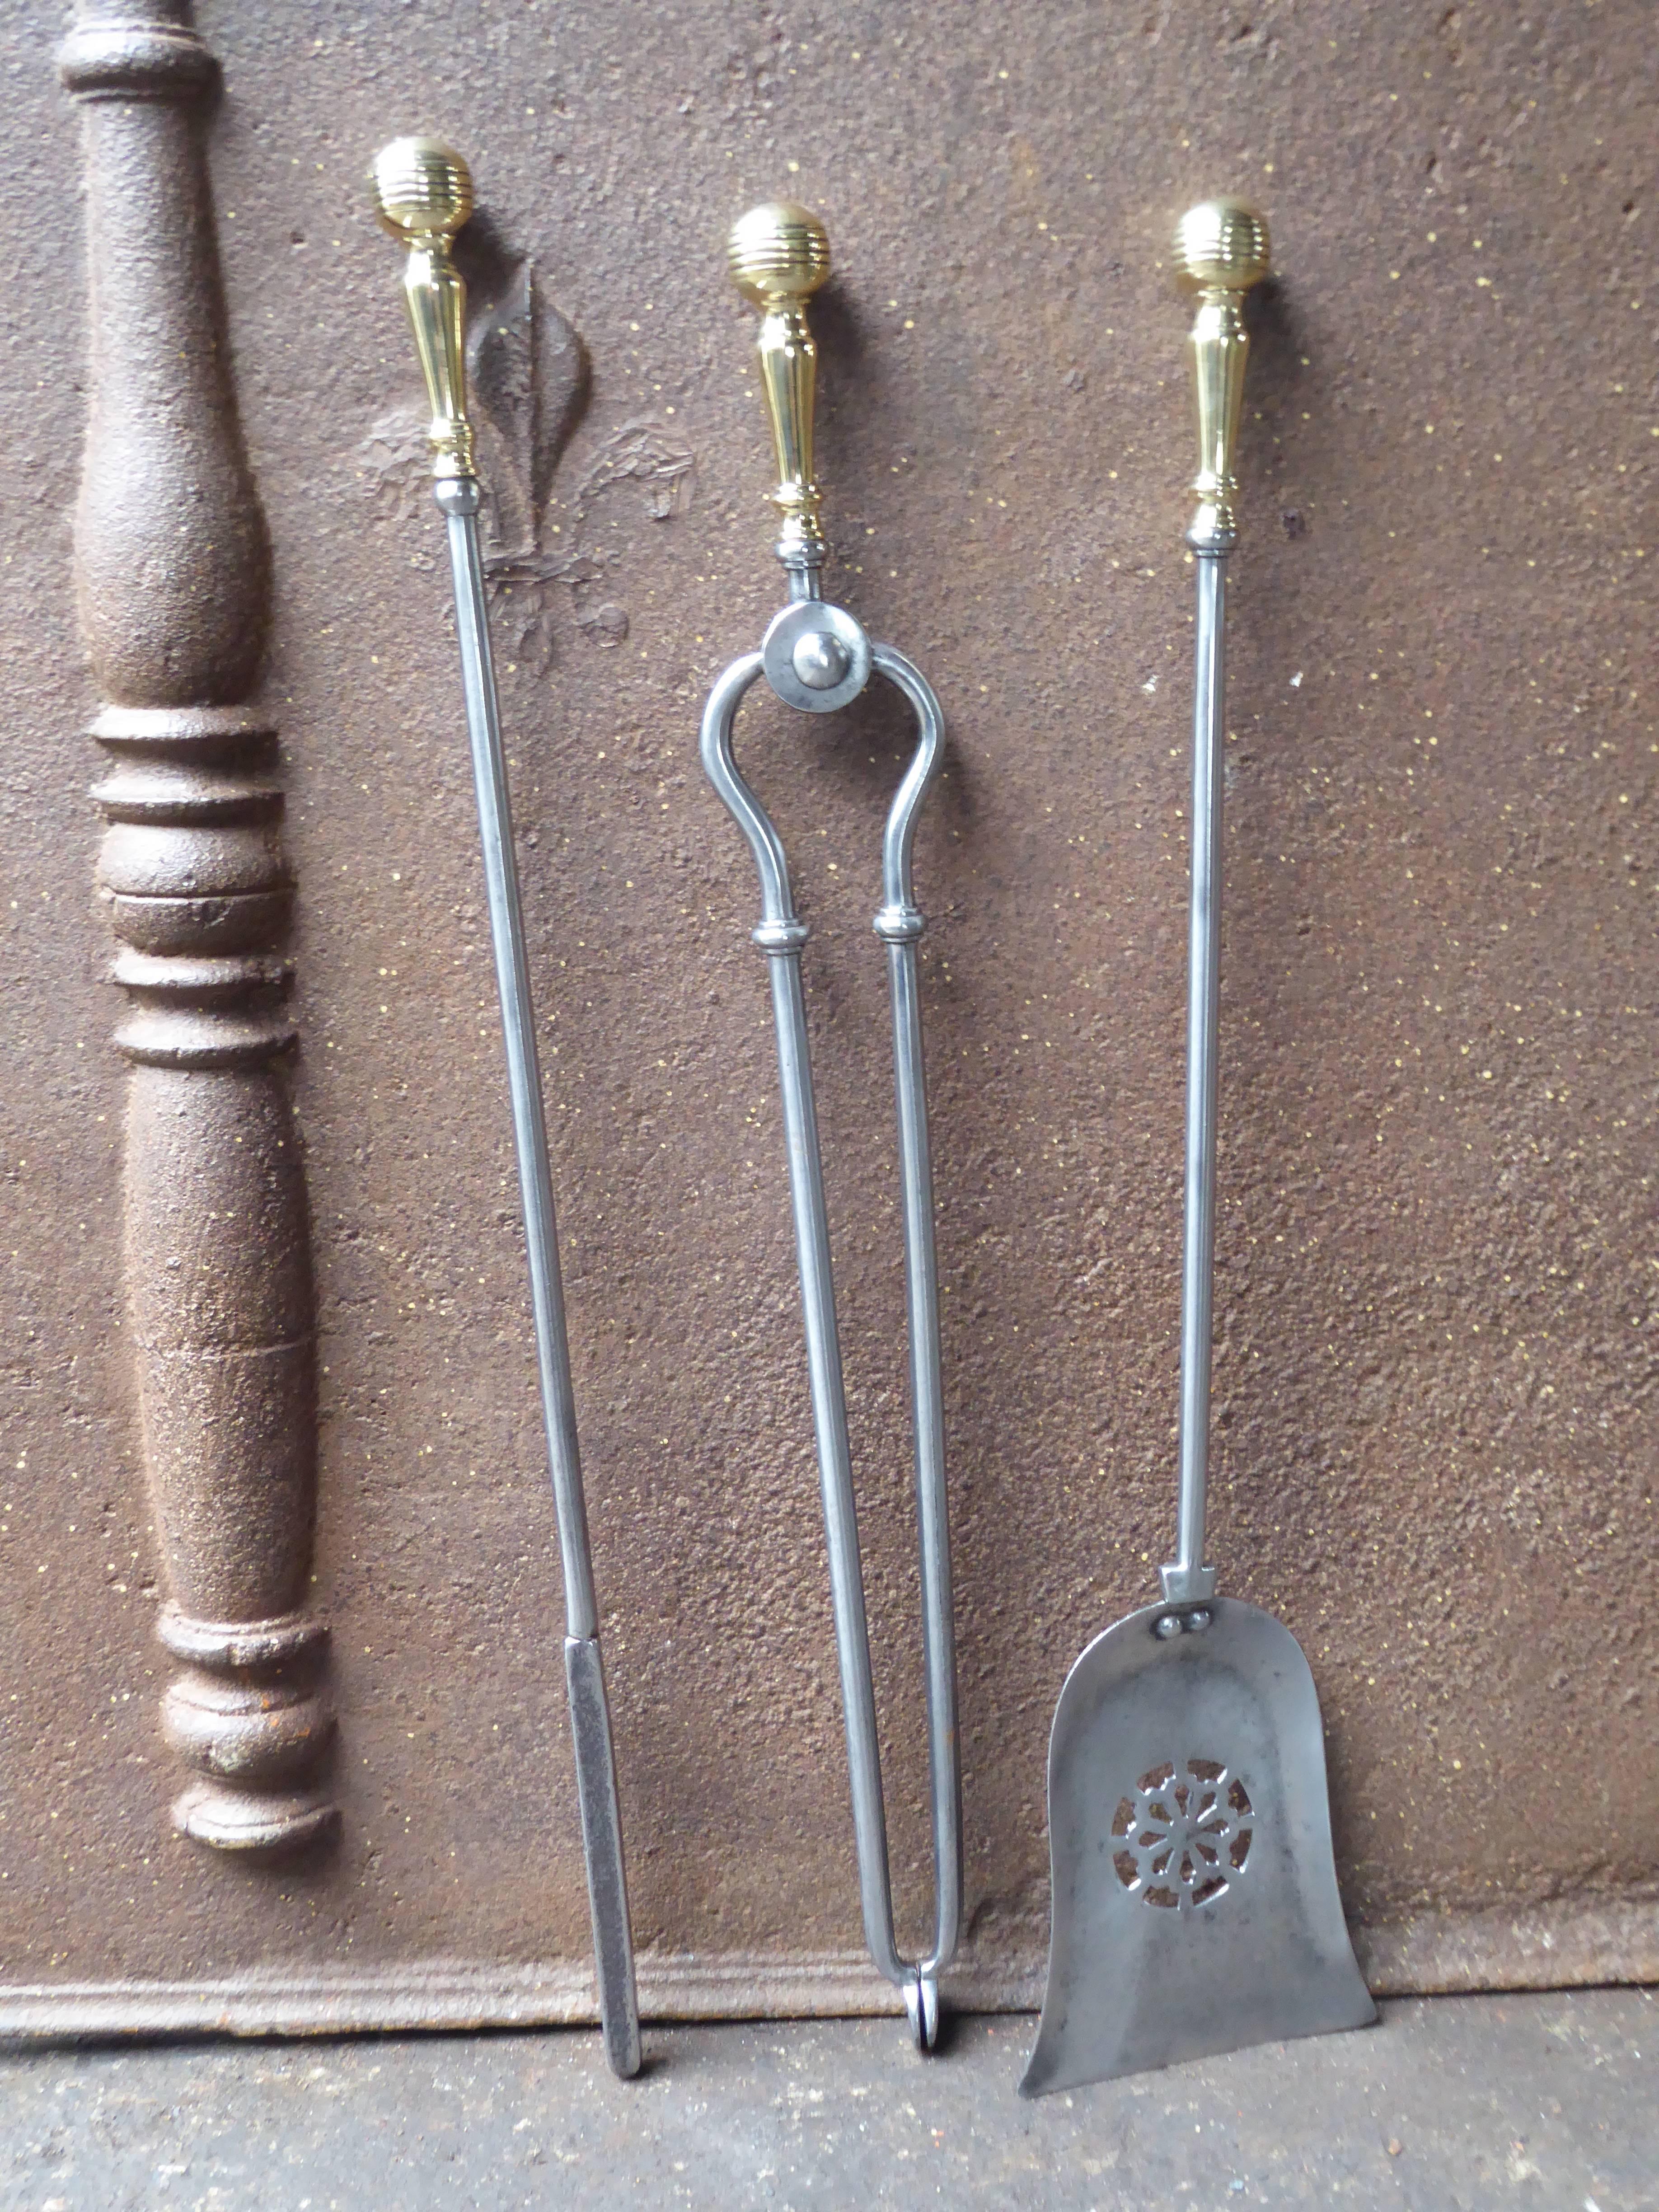 Ensemble d'outils de cheminée du 19e siècle anglais d'époque victorienne - fers à repasser en acier poli et laiton poli. L'ensemble des outils est en bon état.

